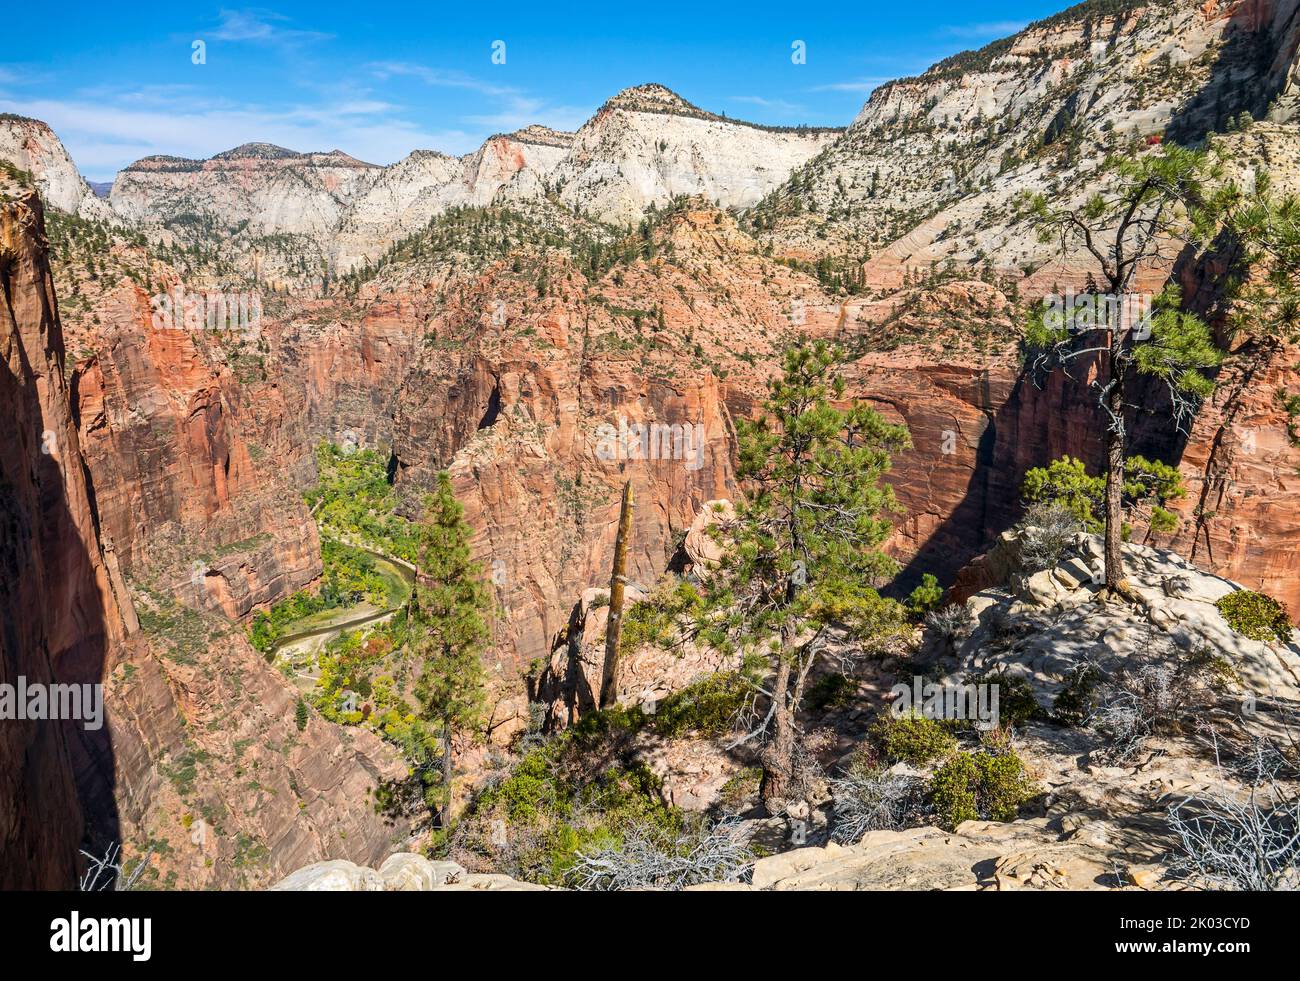 Le parc national de Zion est situé dans le sud-ouest de l'Utah, à la frontière avec l'Arizona. Il a une superficie de 579 kö² et se situe entre 1128 m et 2660 m d'altitude. Vue depuis le sentier du plateau ouest jusqu'à Zion Canyon. Banque D'Images